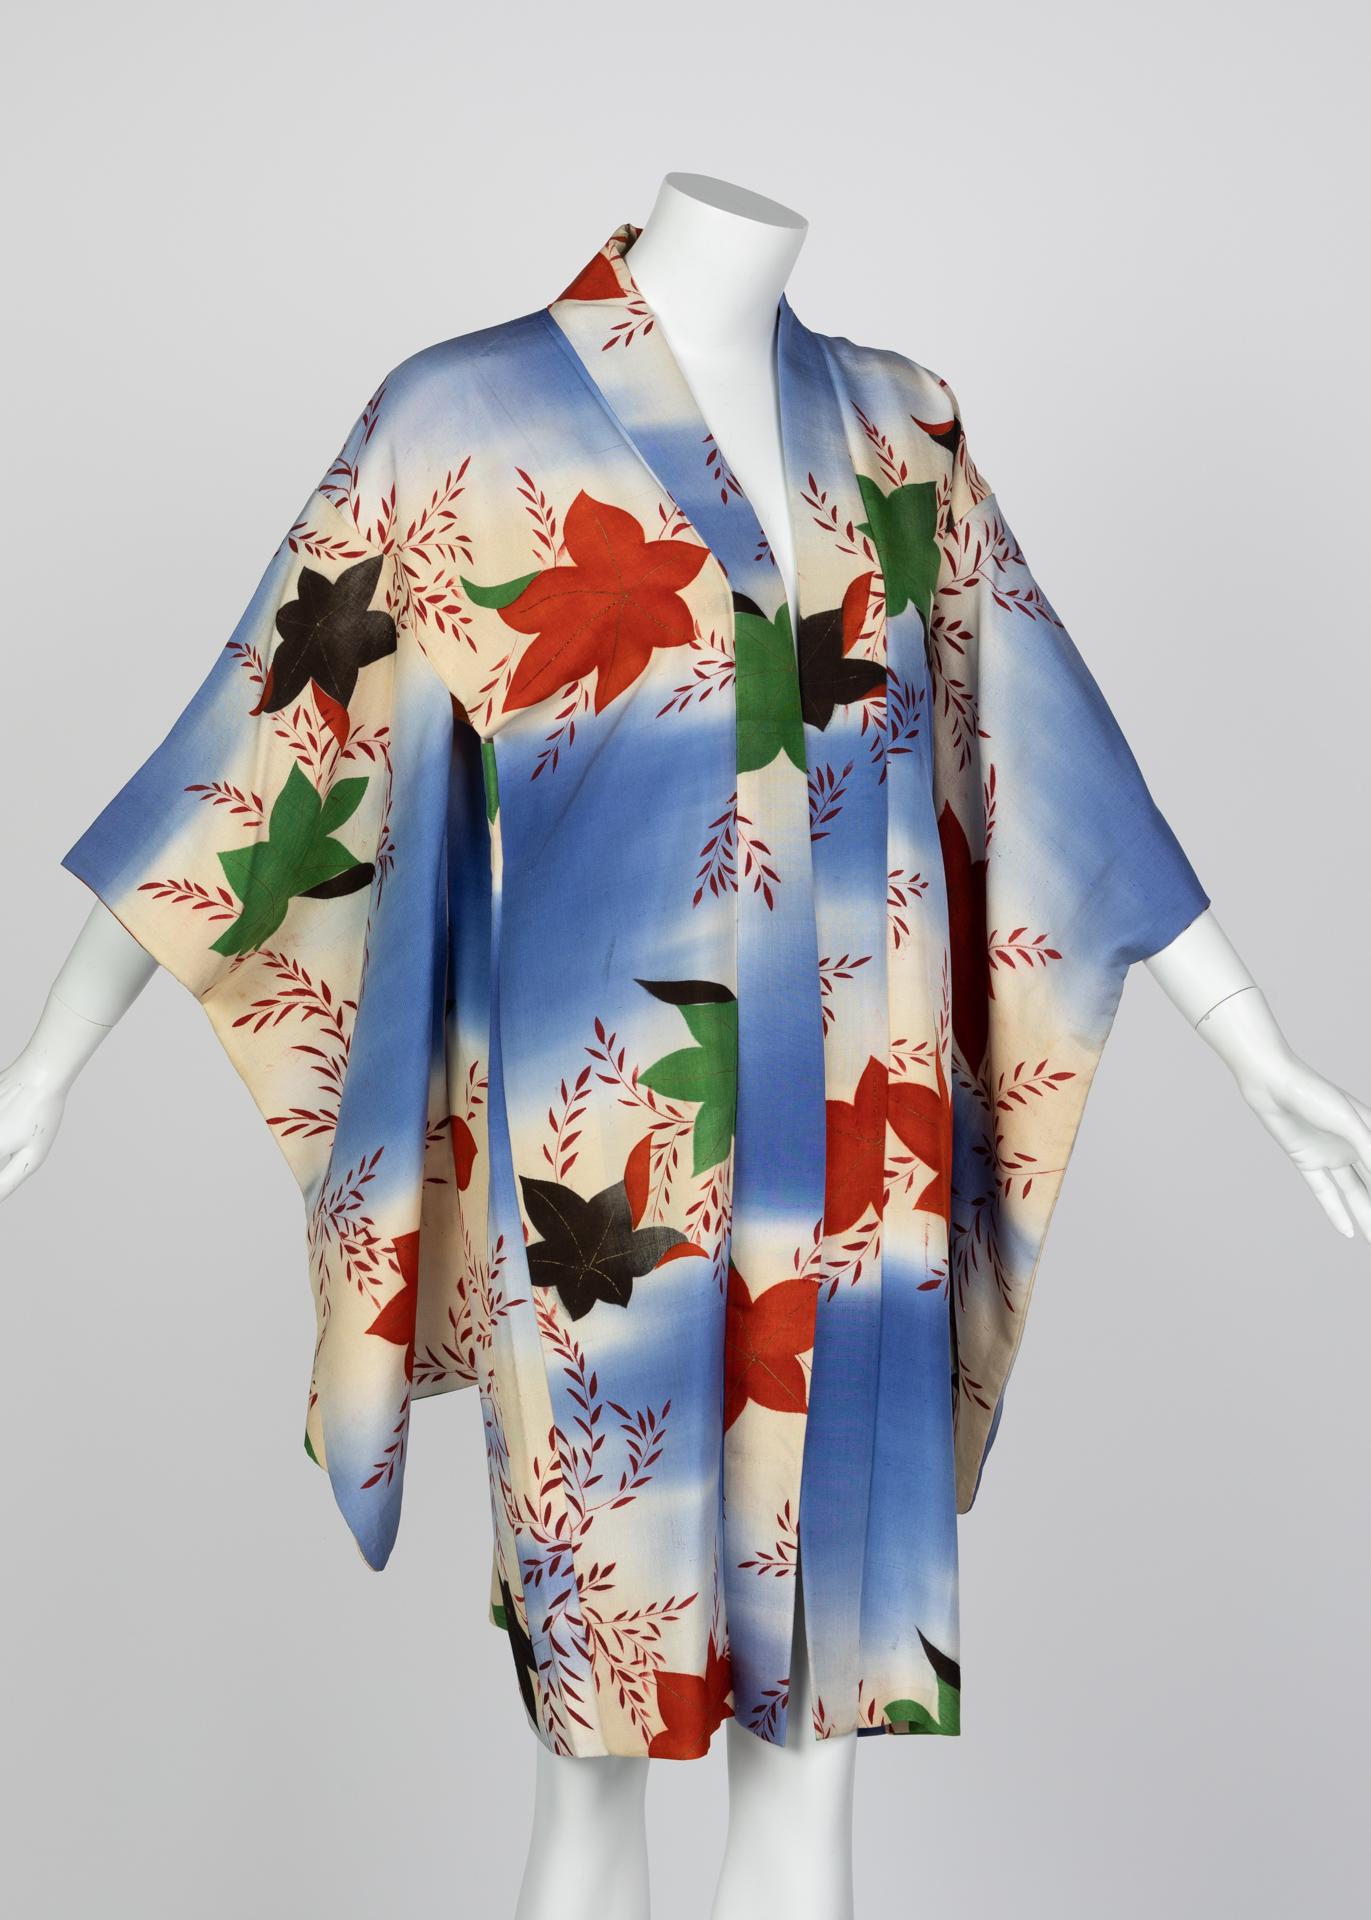 Robe kimono en soie japonaise aquarelle à feuilles tombantes, années 1970 Excellent état - En vente à Boca Raton, FL